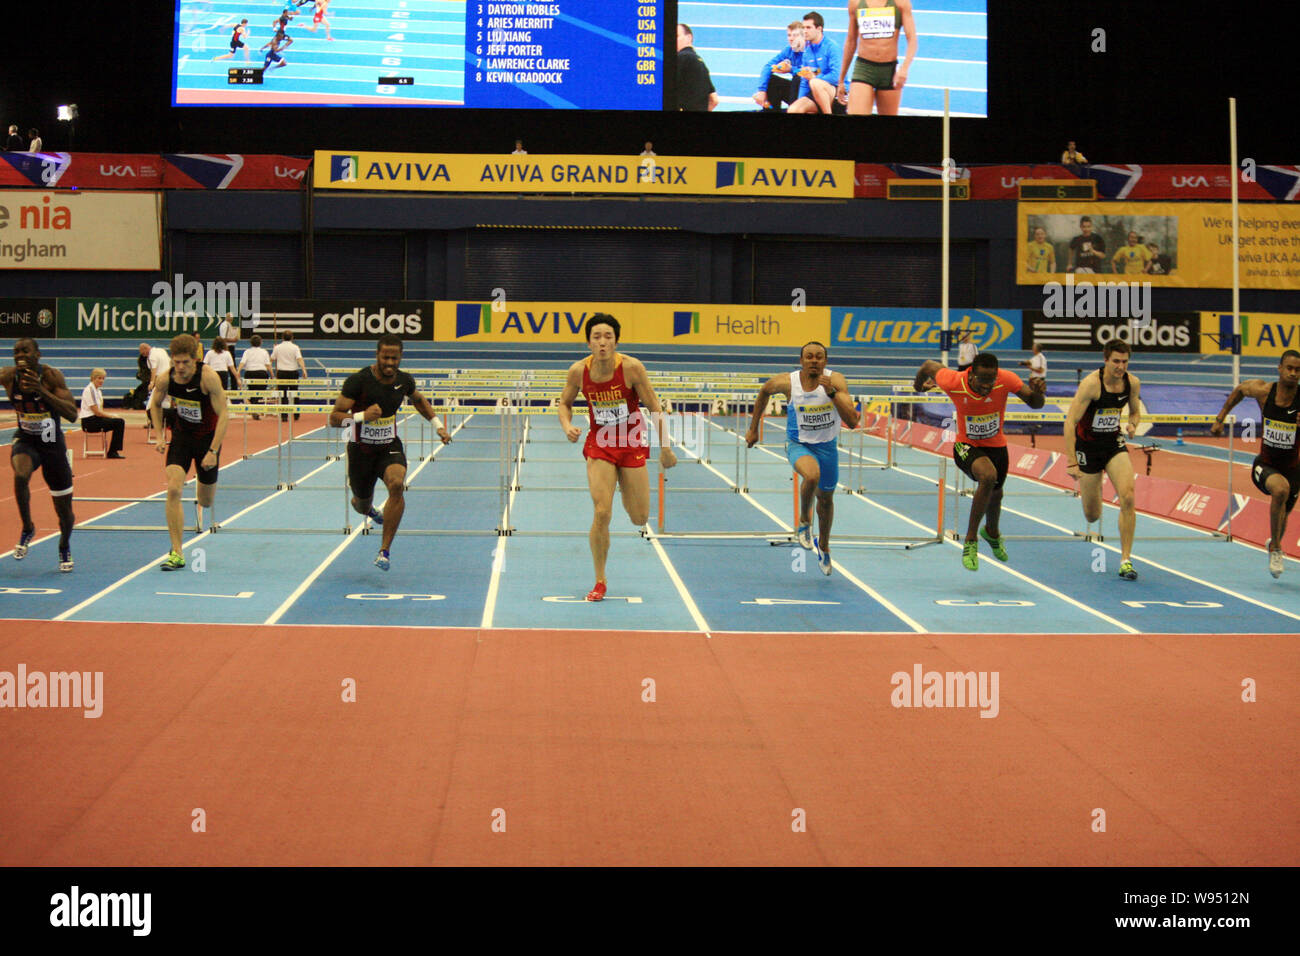 China Liu Xiang, vierten linken und anderen hurdlers konkurrieren in der mens 60 m Hürden Finale während der Aviva Grand Prix Leichtathletik-meeting am Nationalen Stockfoto